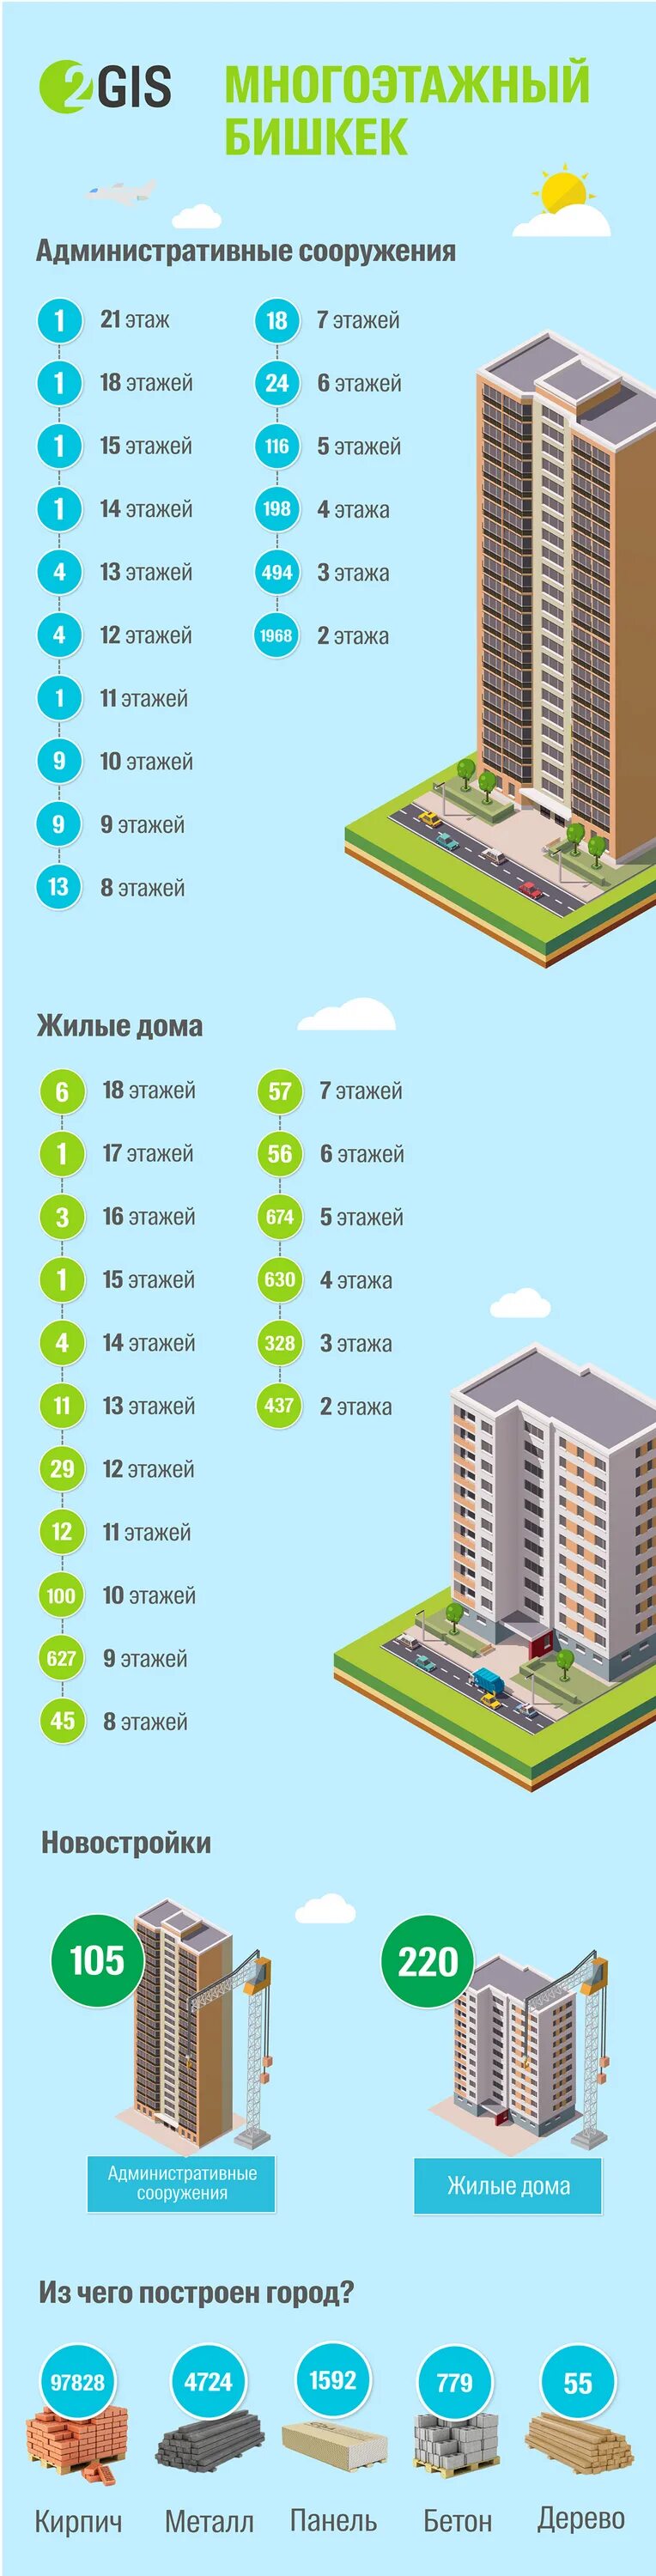 20 Этажный дом высота. 20 Этажный дом в метрах. Высотки инфографика. Жилые многоэтажные дома в Бишкеке.